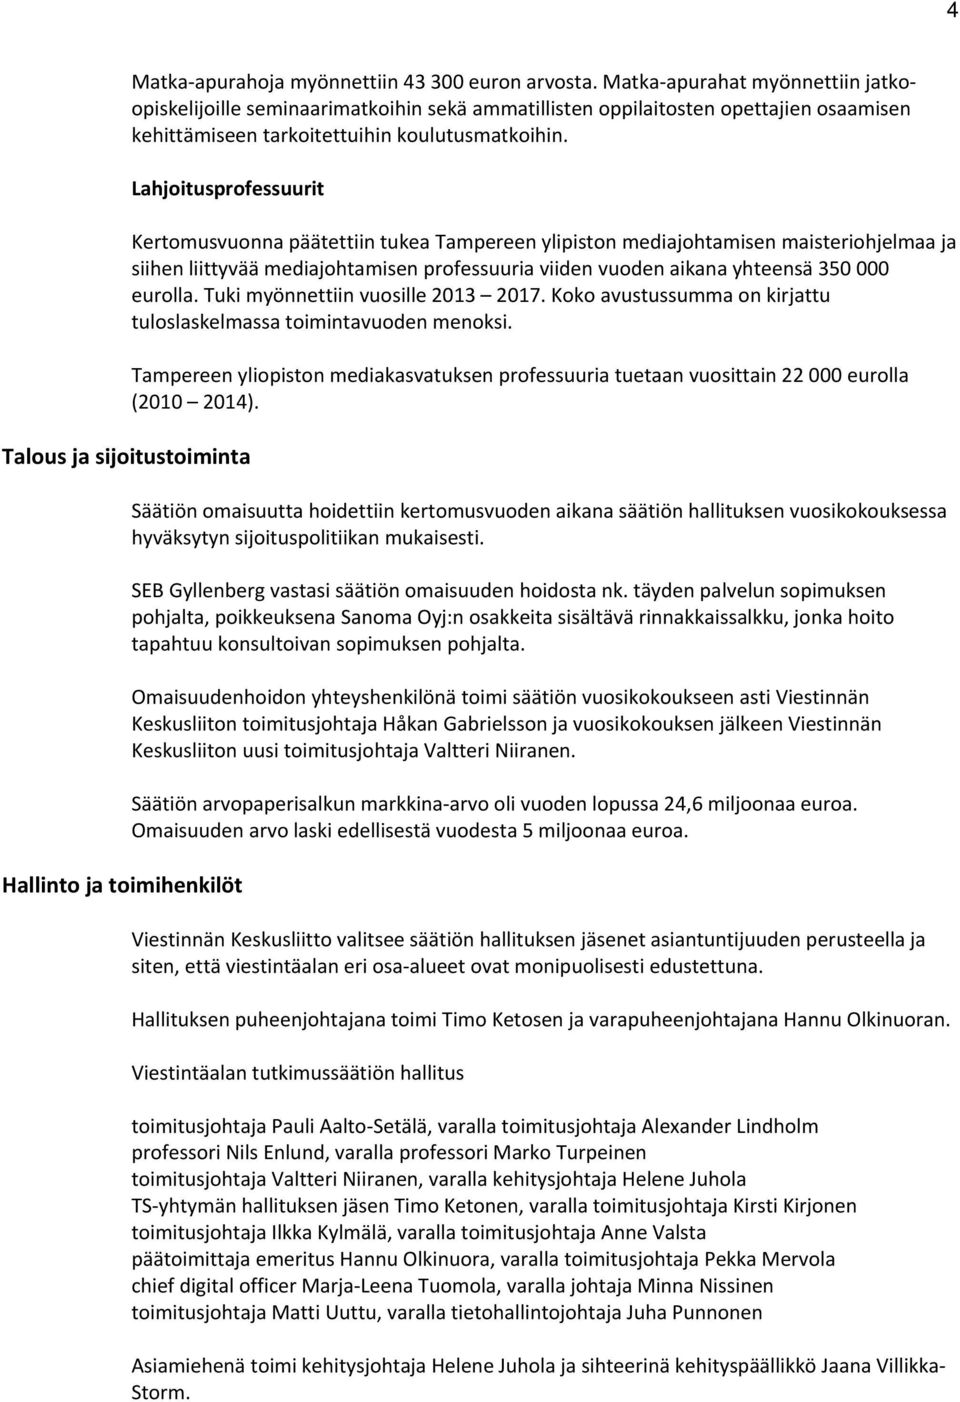 Lahjoitusprofessuurit Talous ja sijoitustoiminta Hallinto ja toimihenkilöt Kertomusvuonna päätettiin tukea Tampereen ylipiston mediajohtamisen maisteriohjelmaa ja siihen liittyvää mediajohtamisen